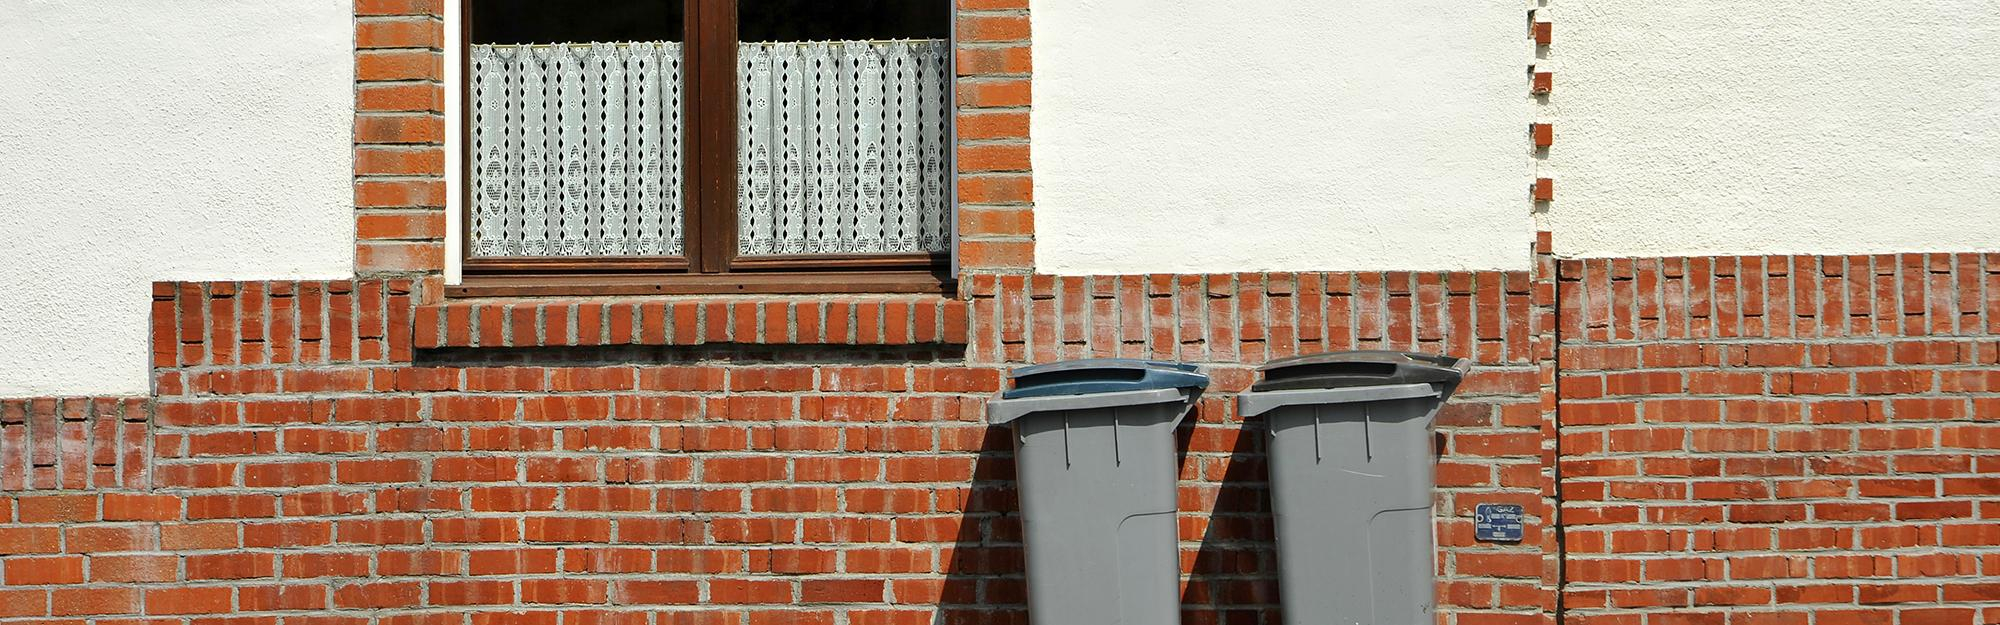 Comment obtenir une nouvelle poubelle pour sa maison ?